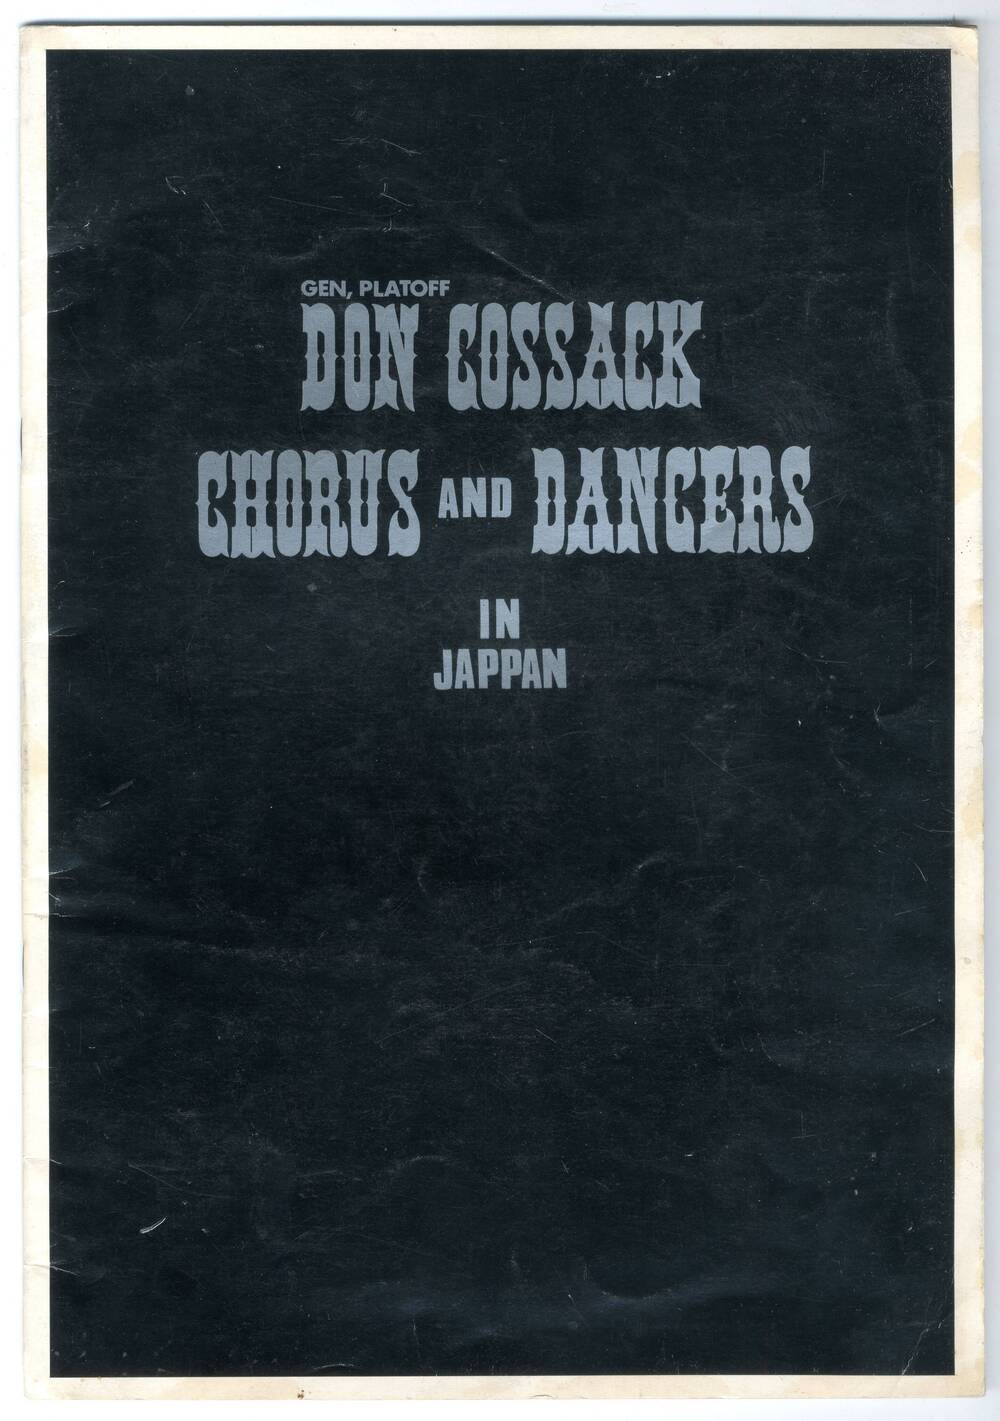 Буклет хора донских казаков имени  Платова Don Cossack  Chorus and dancers Gen. Platoff на японском  языке.